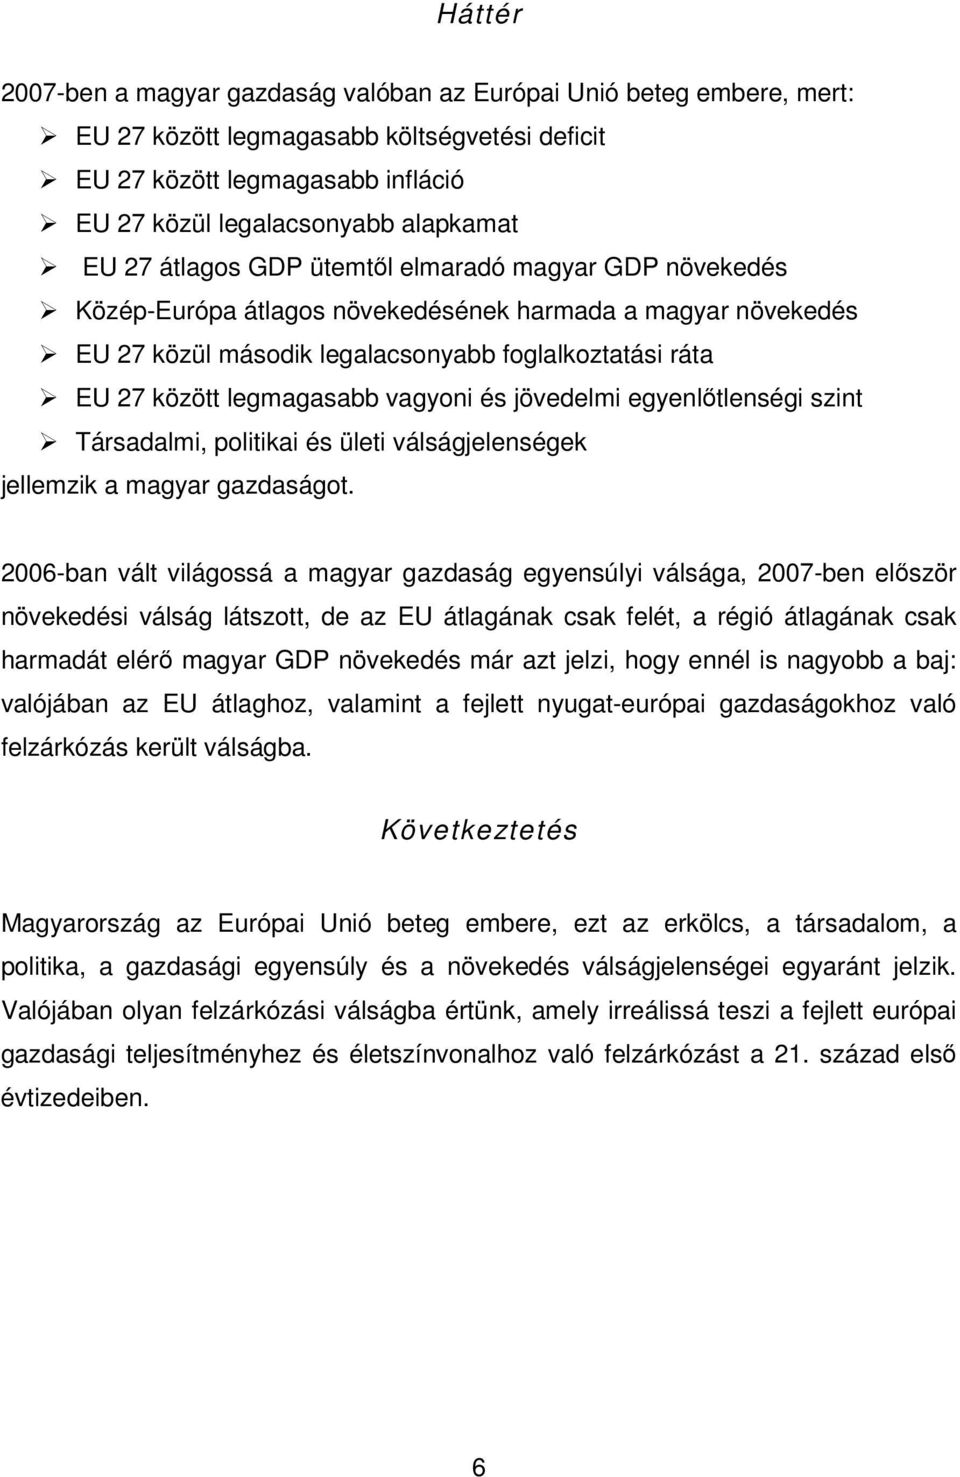 vagyoni és jövedelmi egyenlıtlenségi szint Társadalmi, politikai és ületi válságjelenségek jellemzik a magyar gazdaságot.